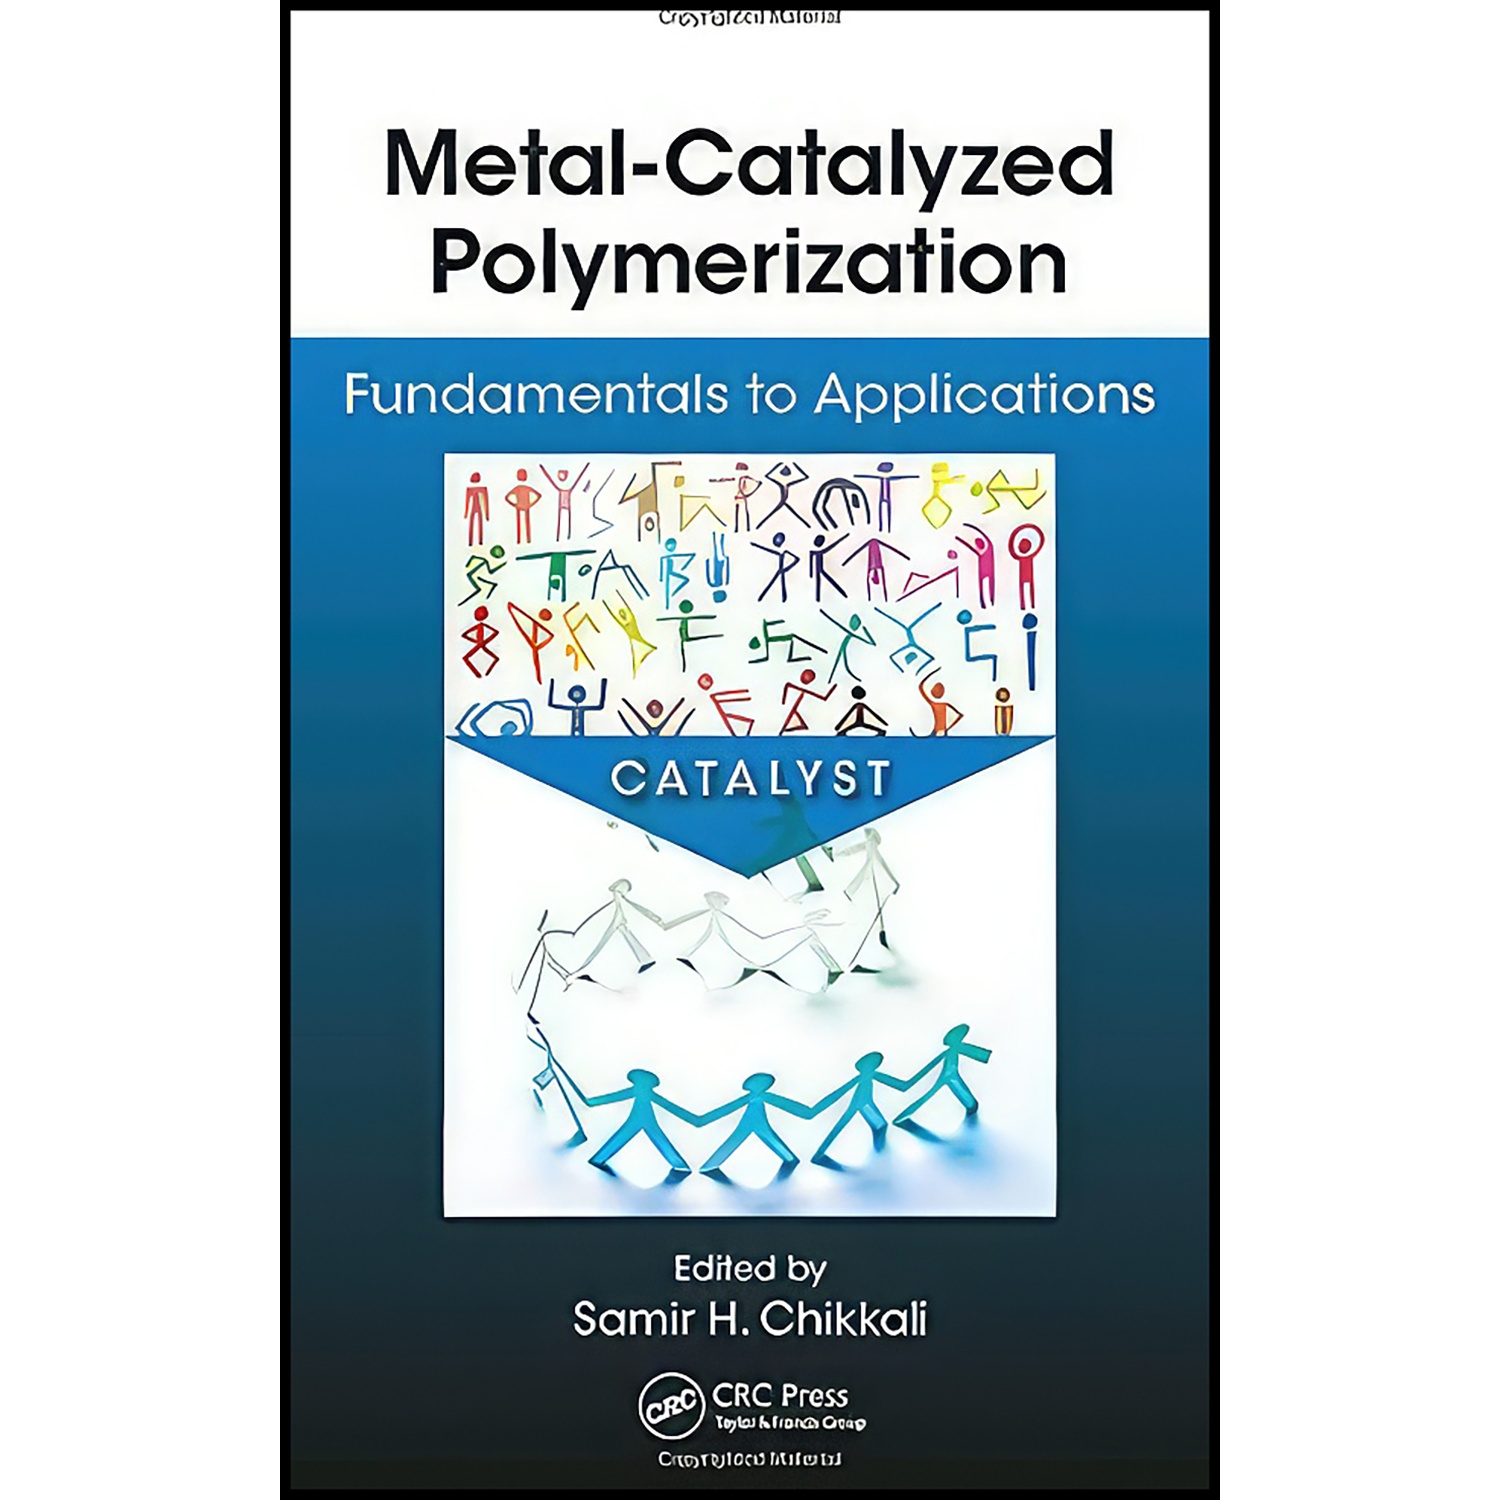 کتاب Metal-Catalyzed Polymerization اثر جمعي از نويسندگان انتشارات CRC Press